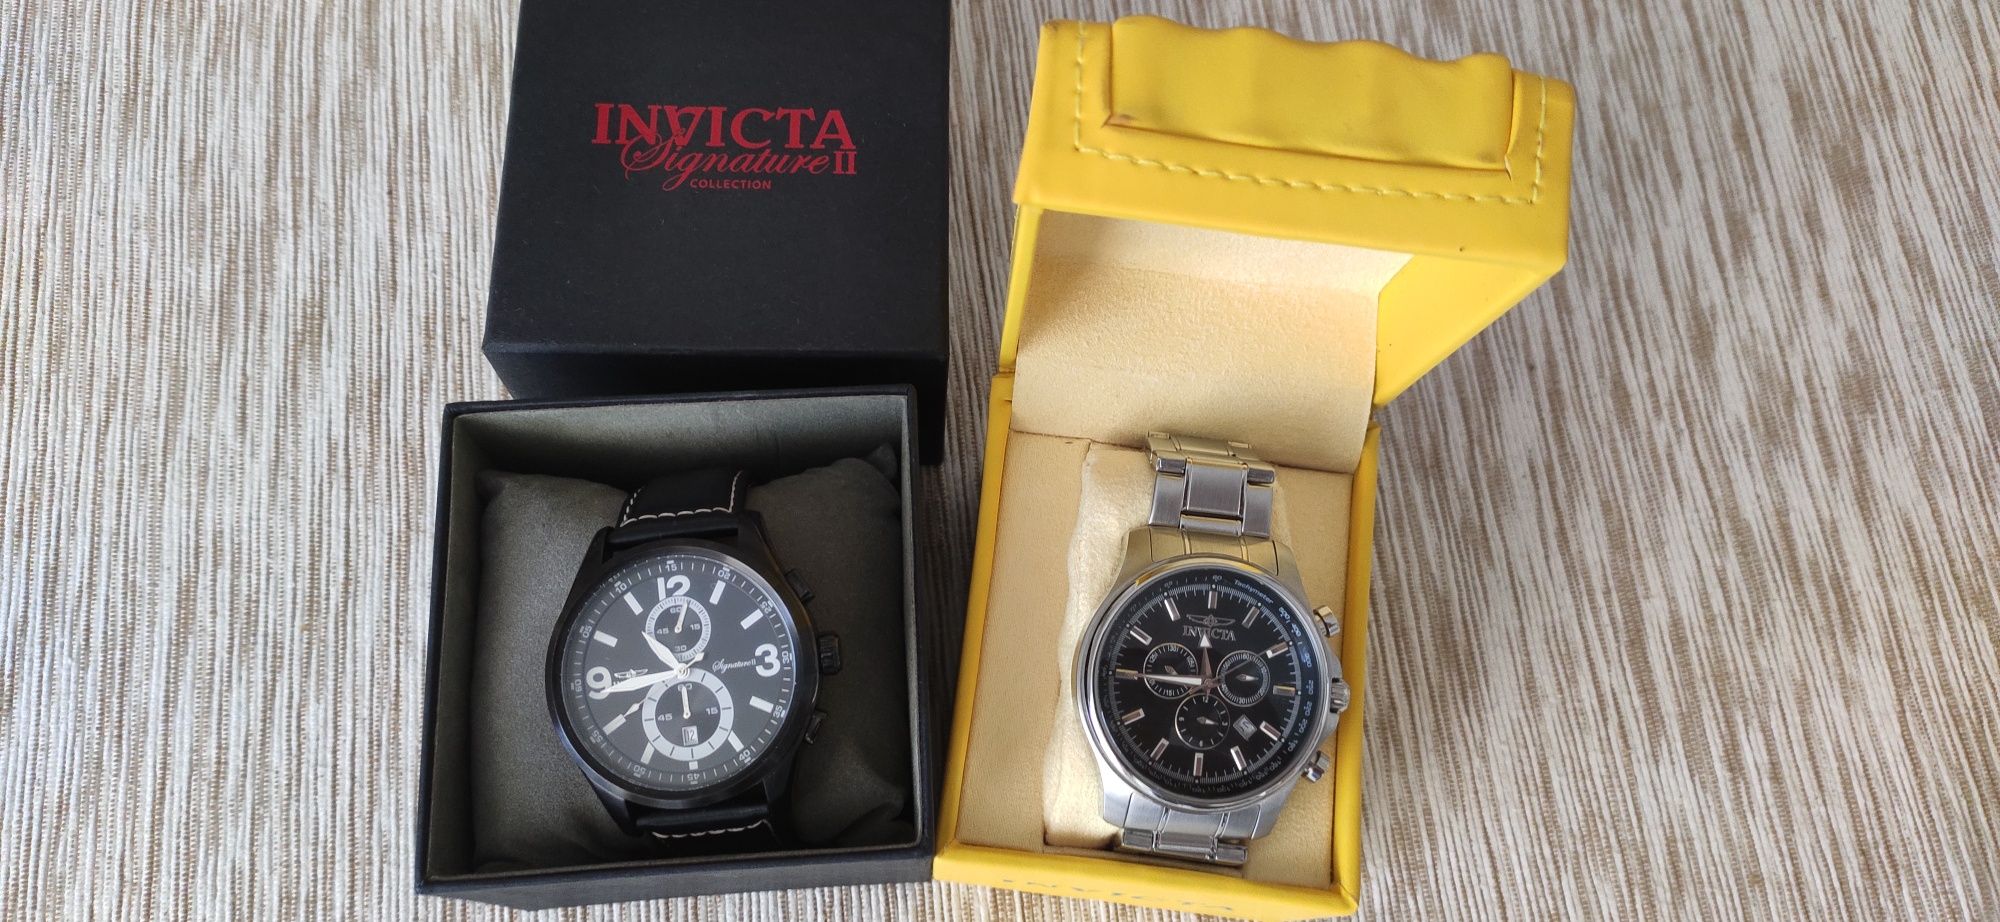 2 часовника Invicta, Signature 2 - 7420 & Specialty 1835